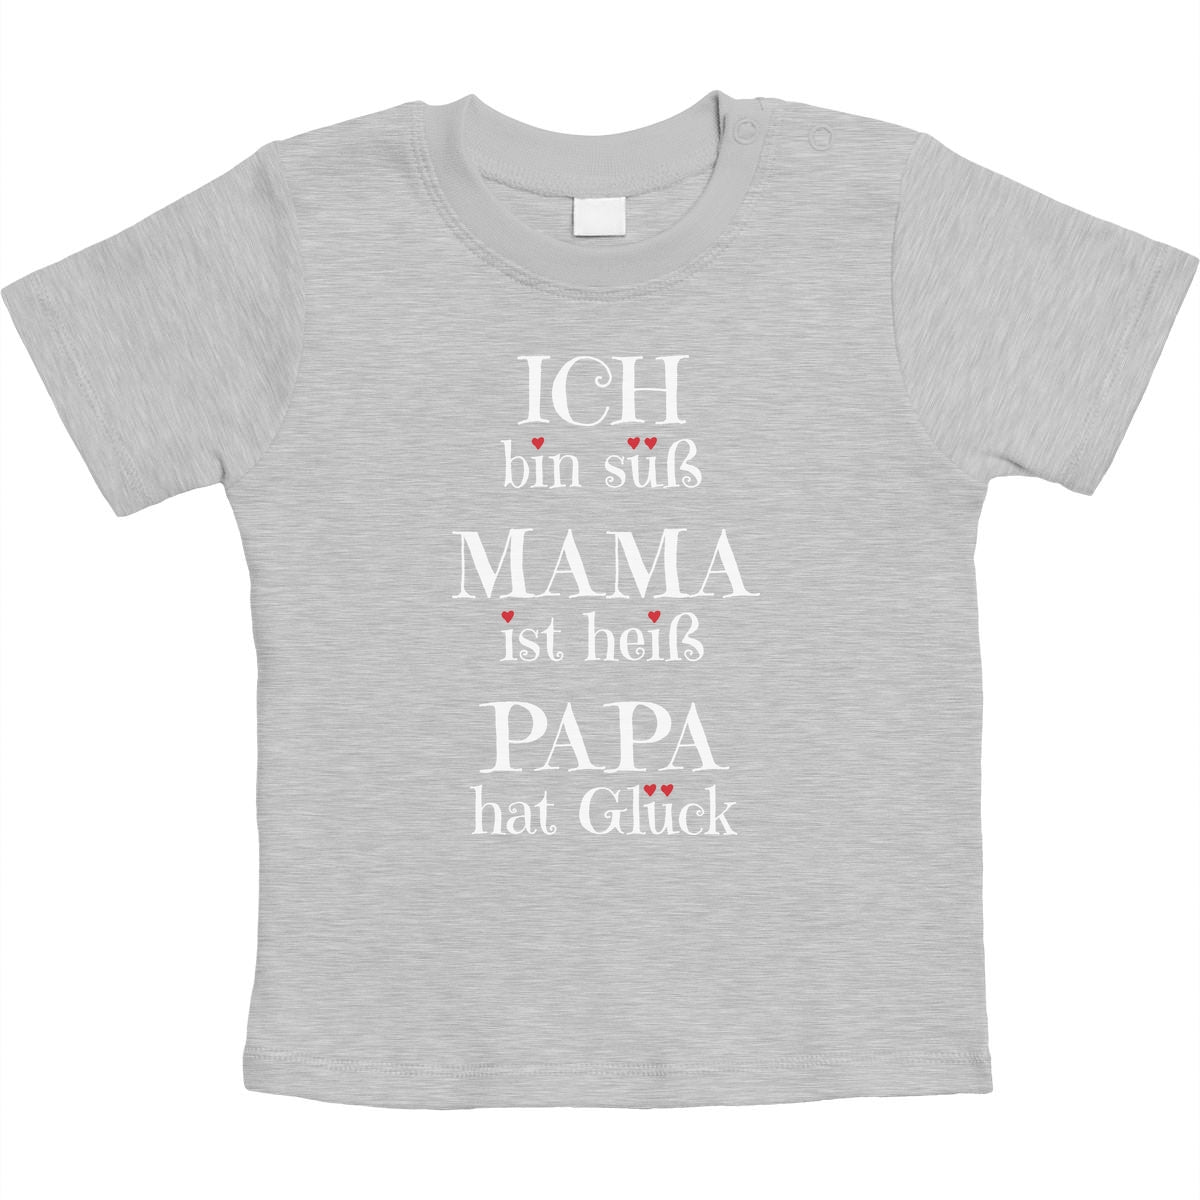 Ich bin süß, Mama ist heiss, Papa hat Glück Unisex Baby T-Shirt Gr. 66-93